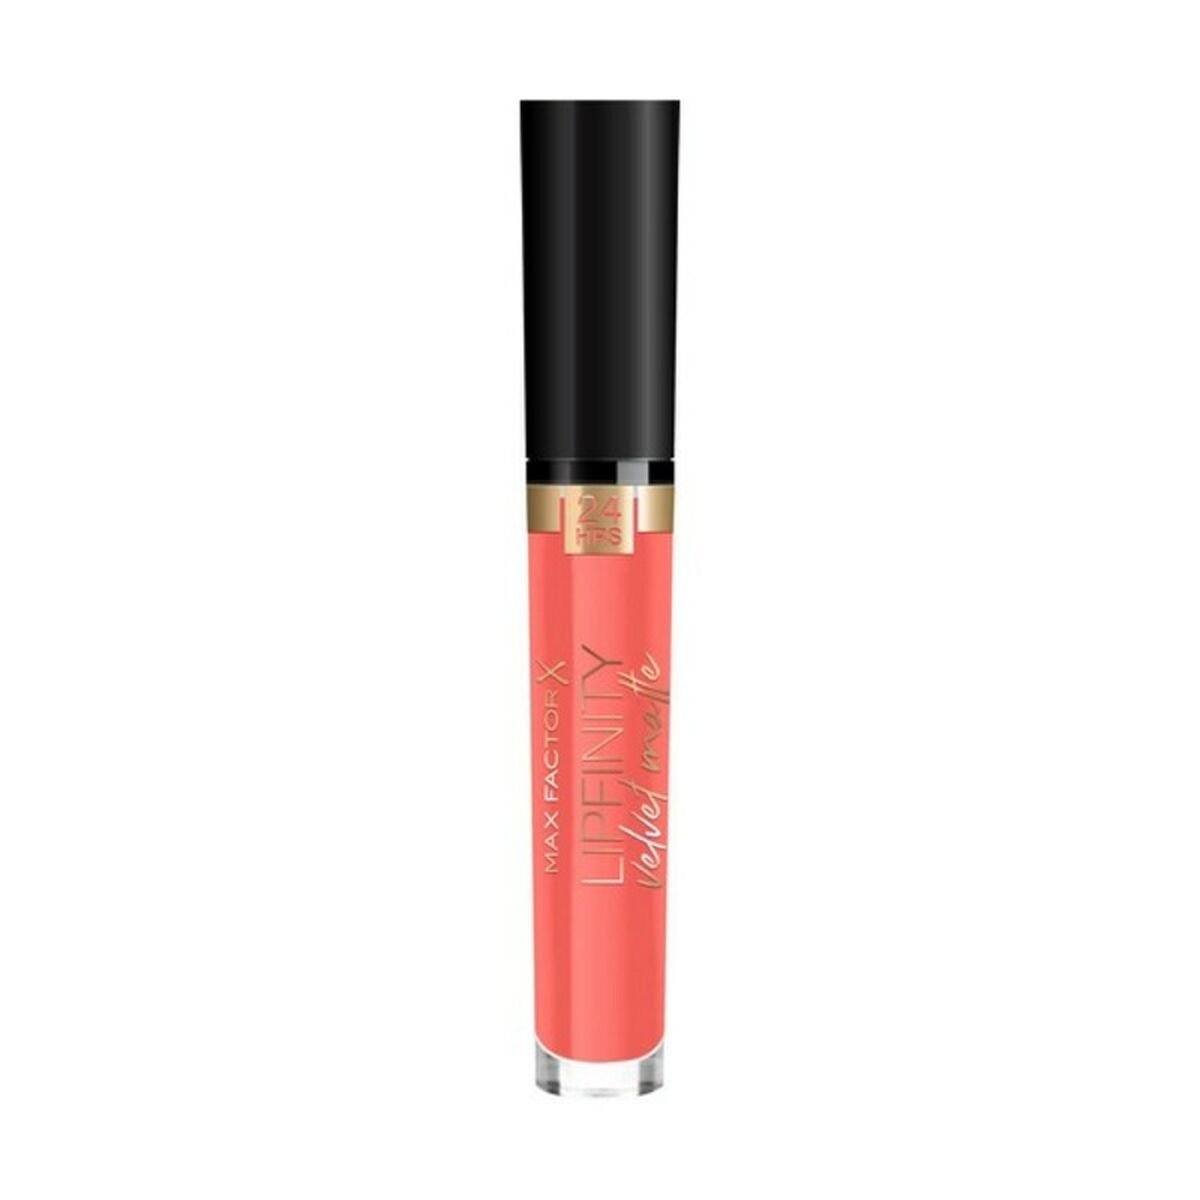 Lipstick Lipfinity Velvet Matte Max Factor (23 g) - JOSEPH BEAUTY